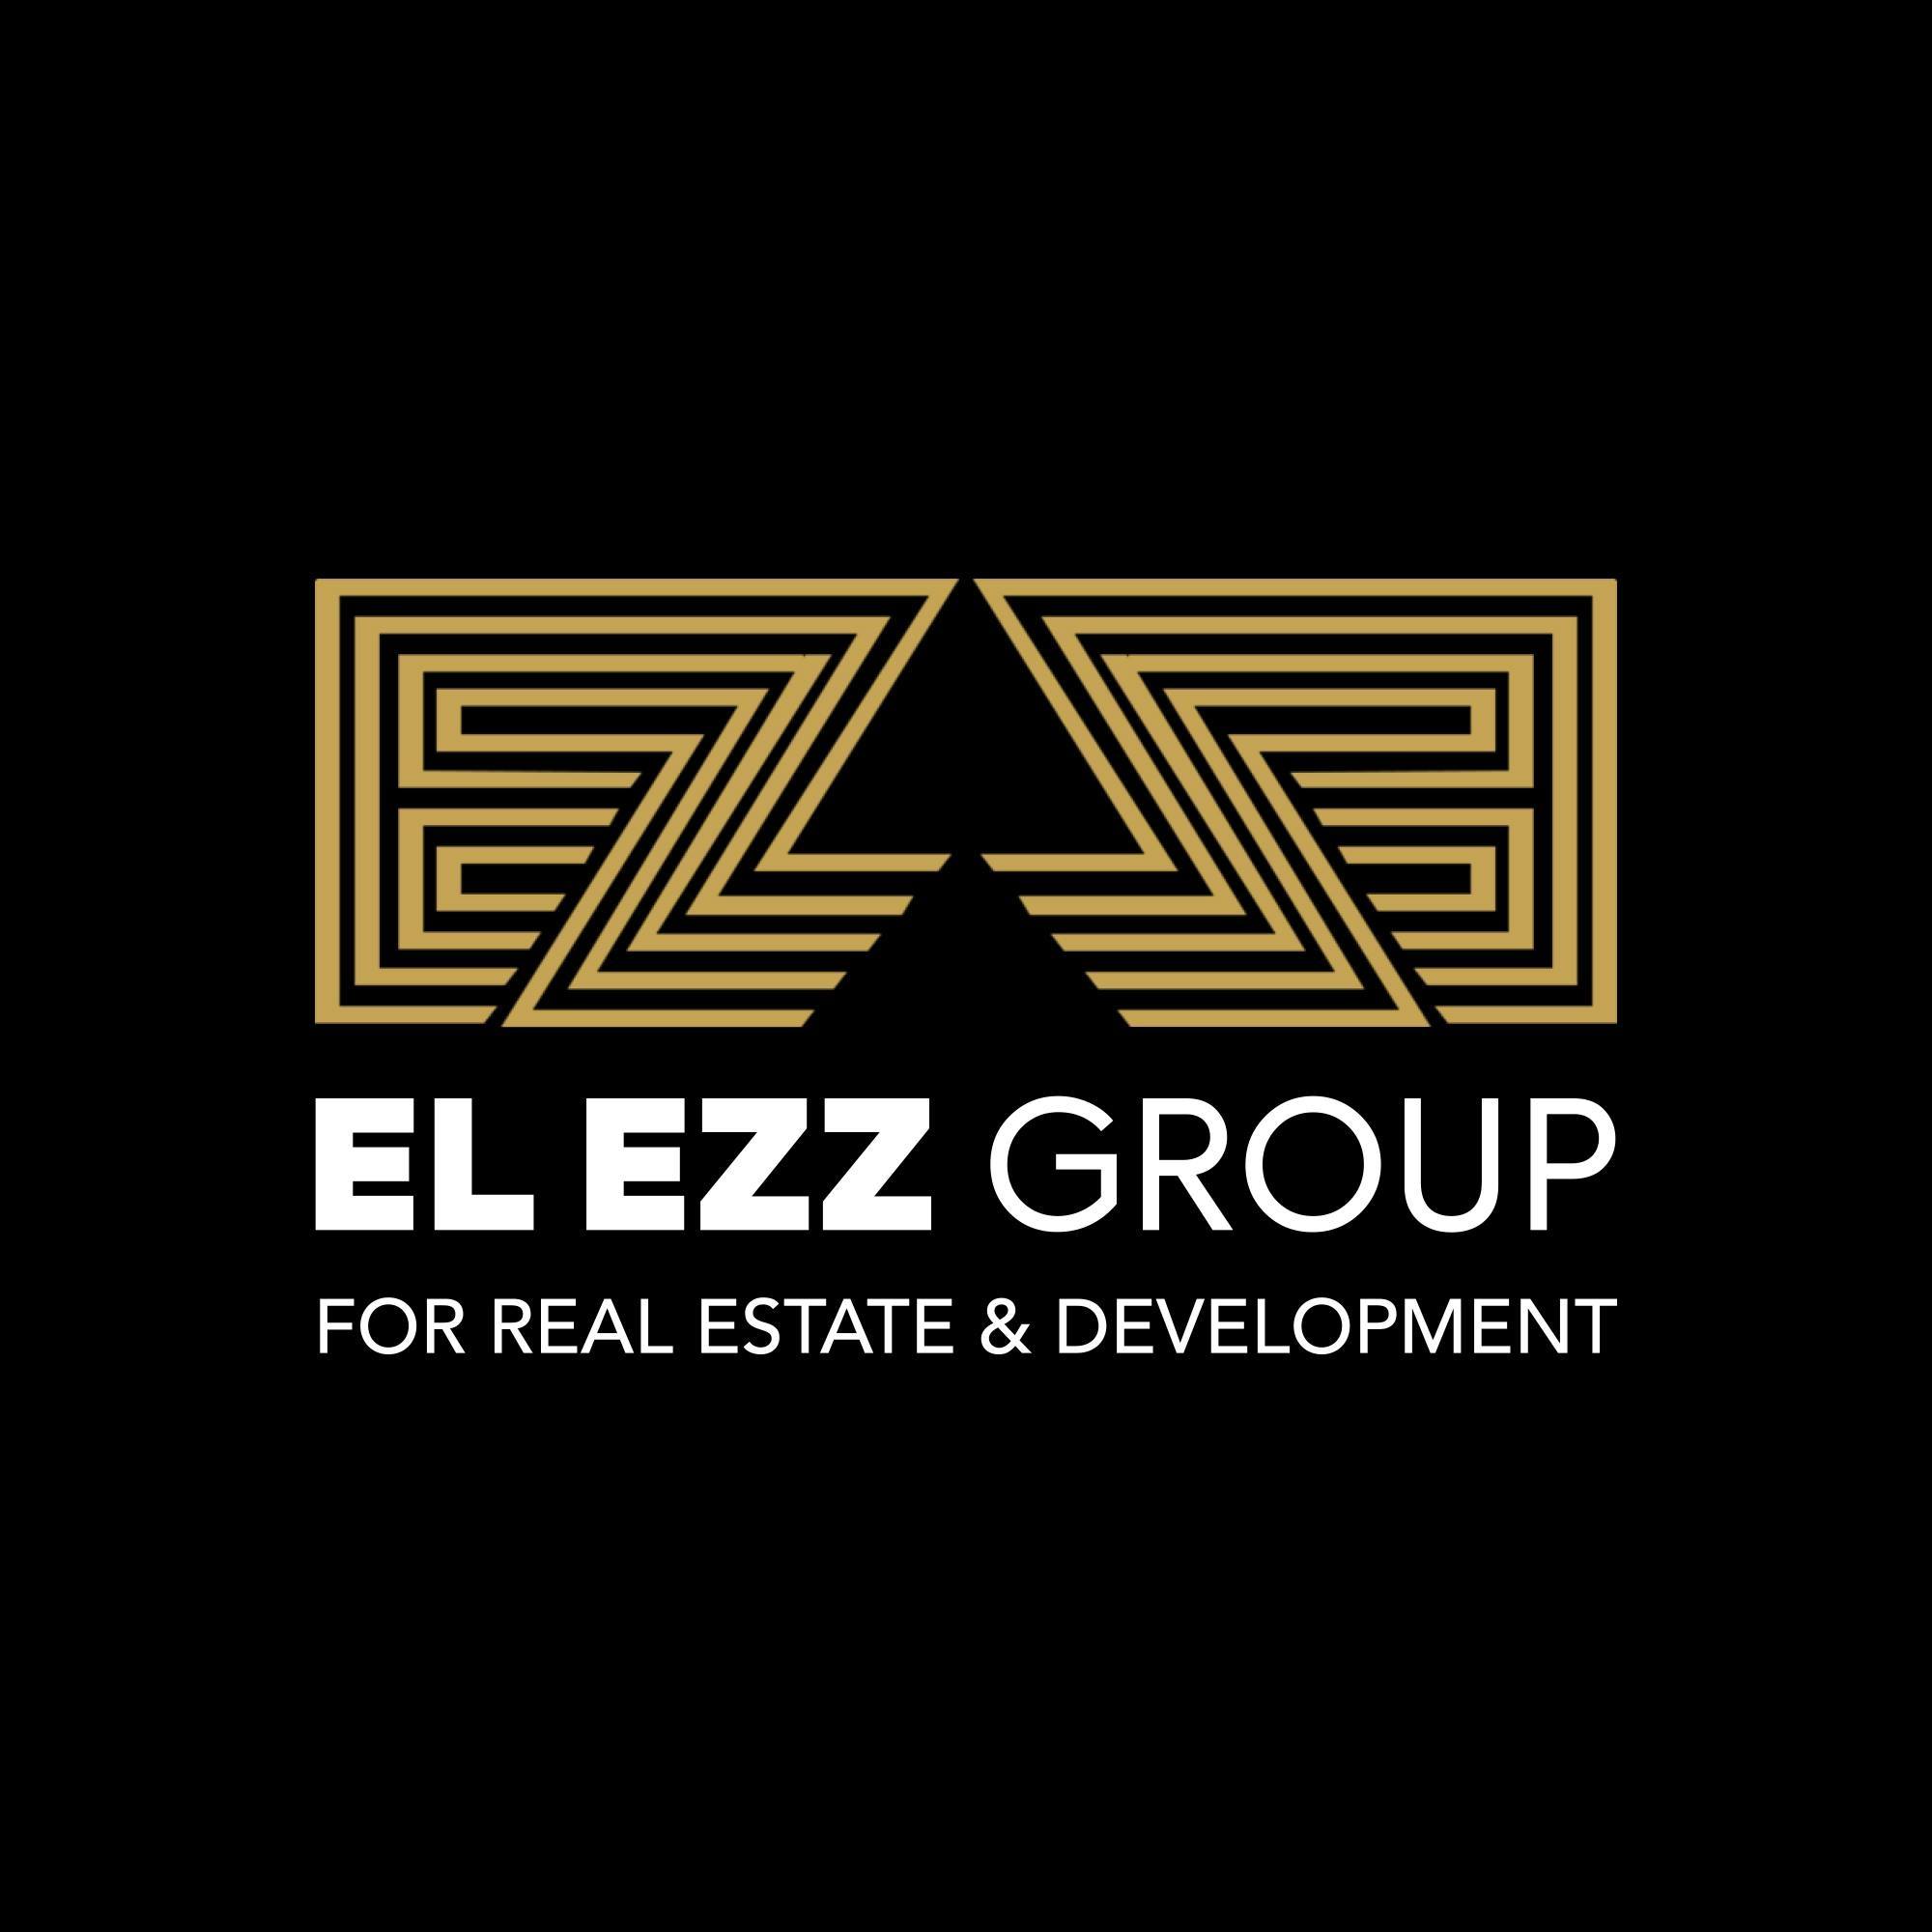 El Ezz Developments